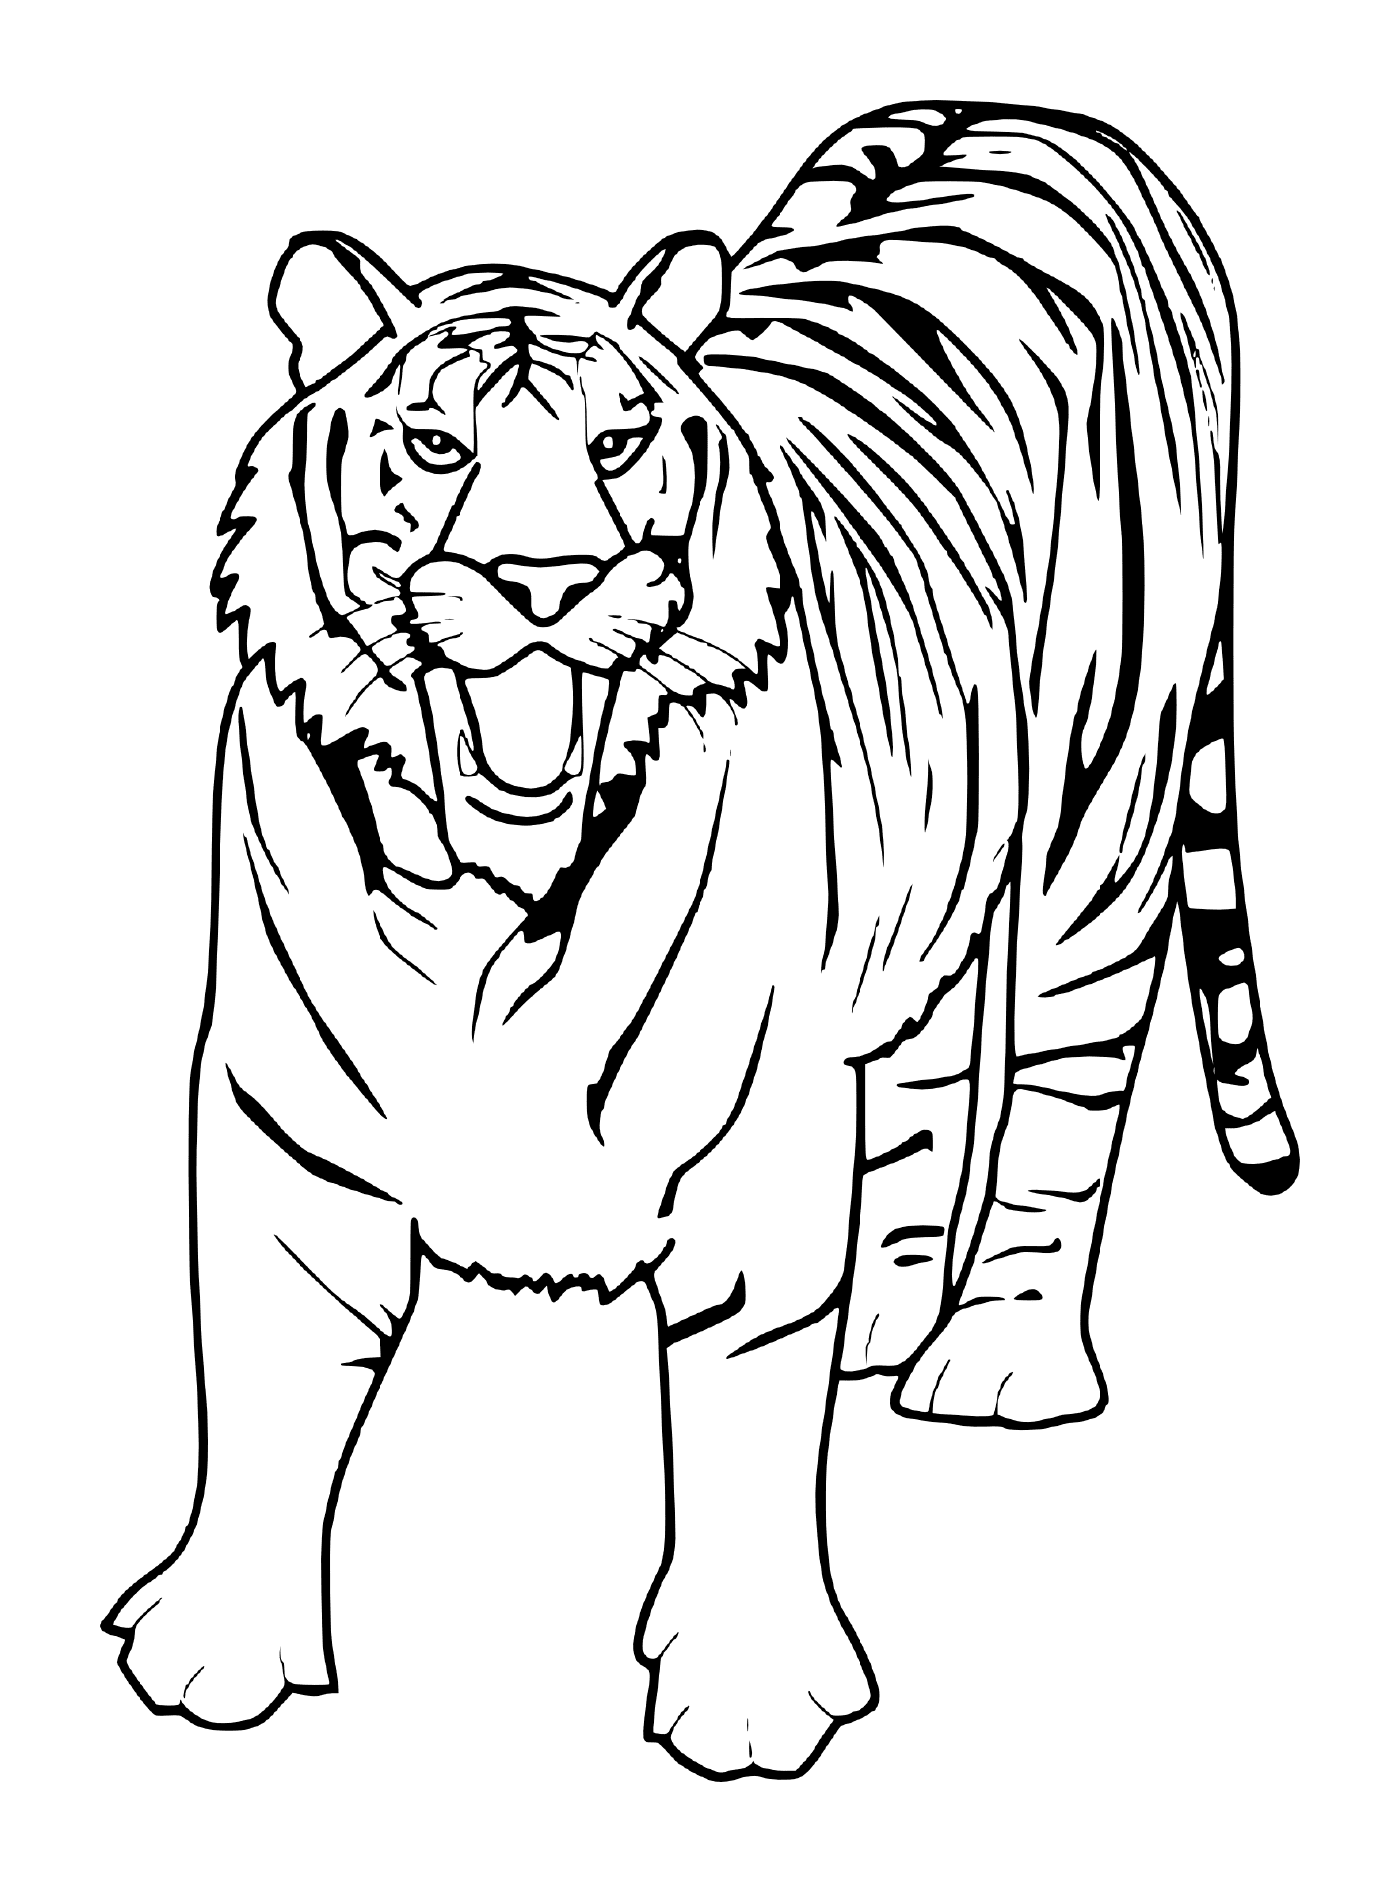  एक खूबसूरत सफेद बाघ 